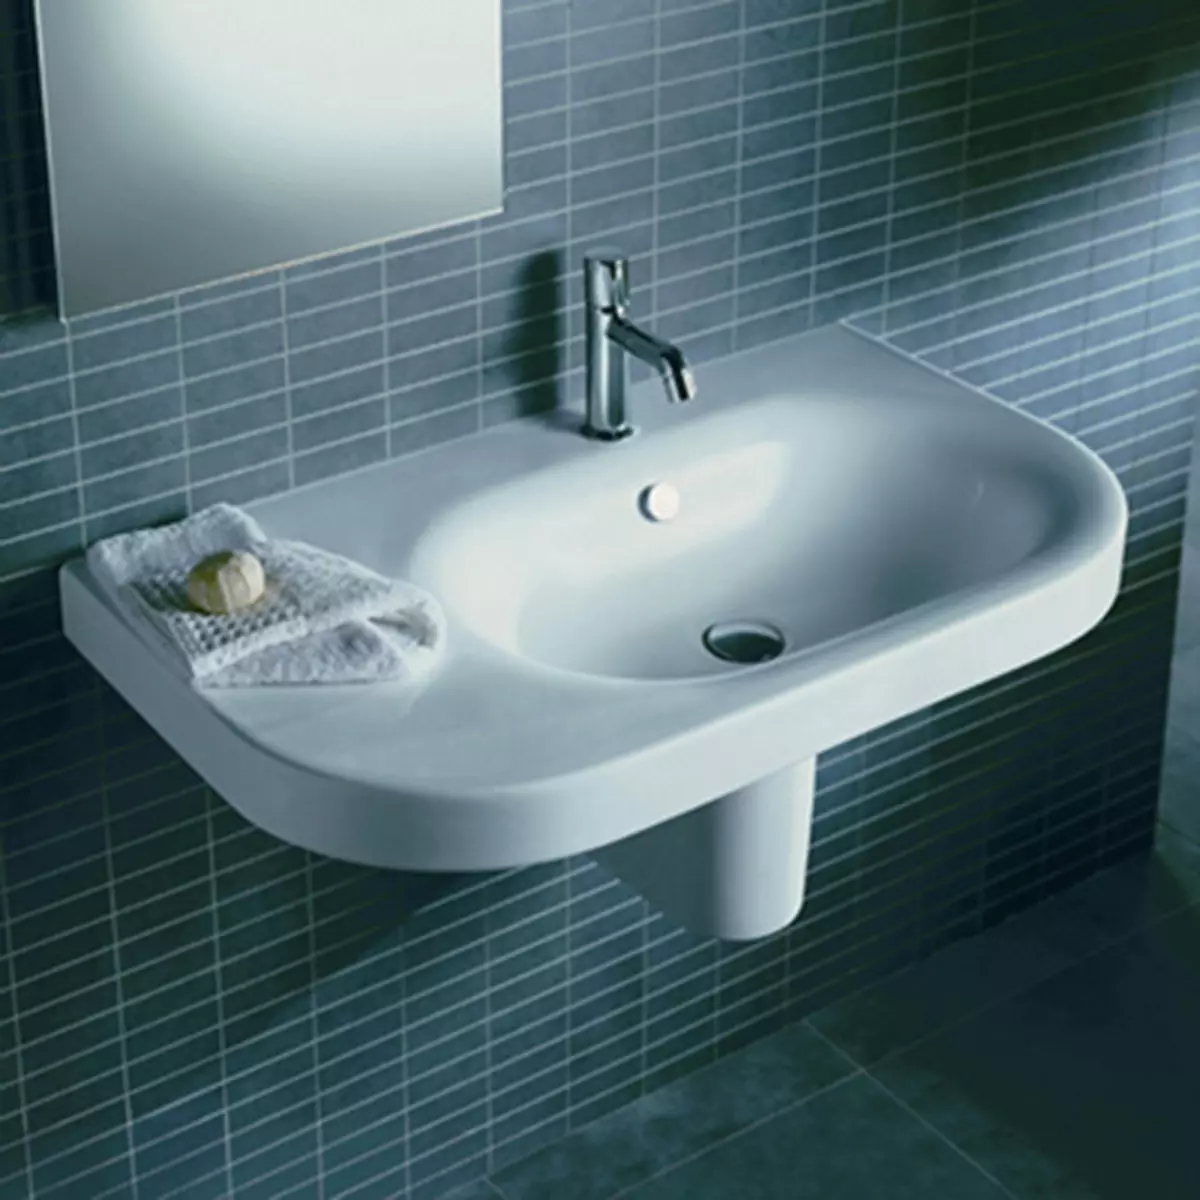 Suspenderad diskbänk i badrummet: Monterade tvättställ 50-60 cm med konsol och tvättning utan en skärare 55-80 cm, andra modeller 21424_43